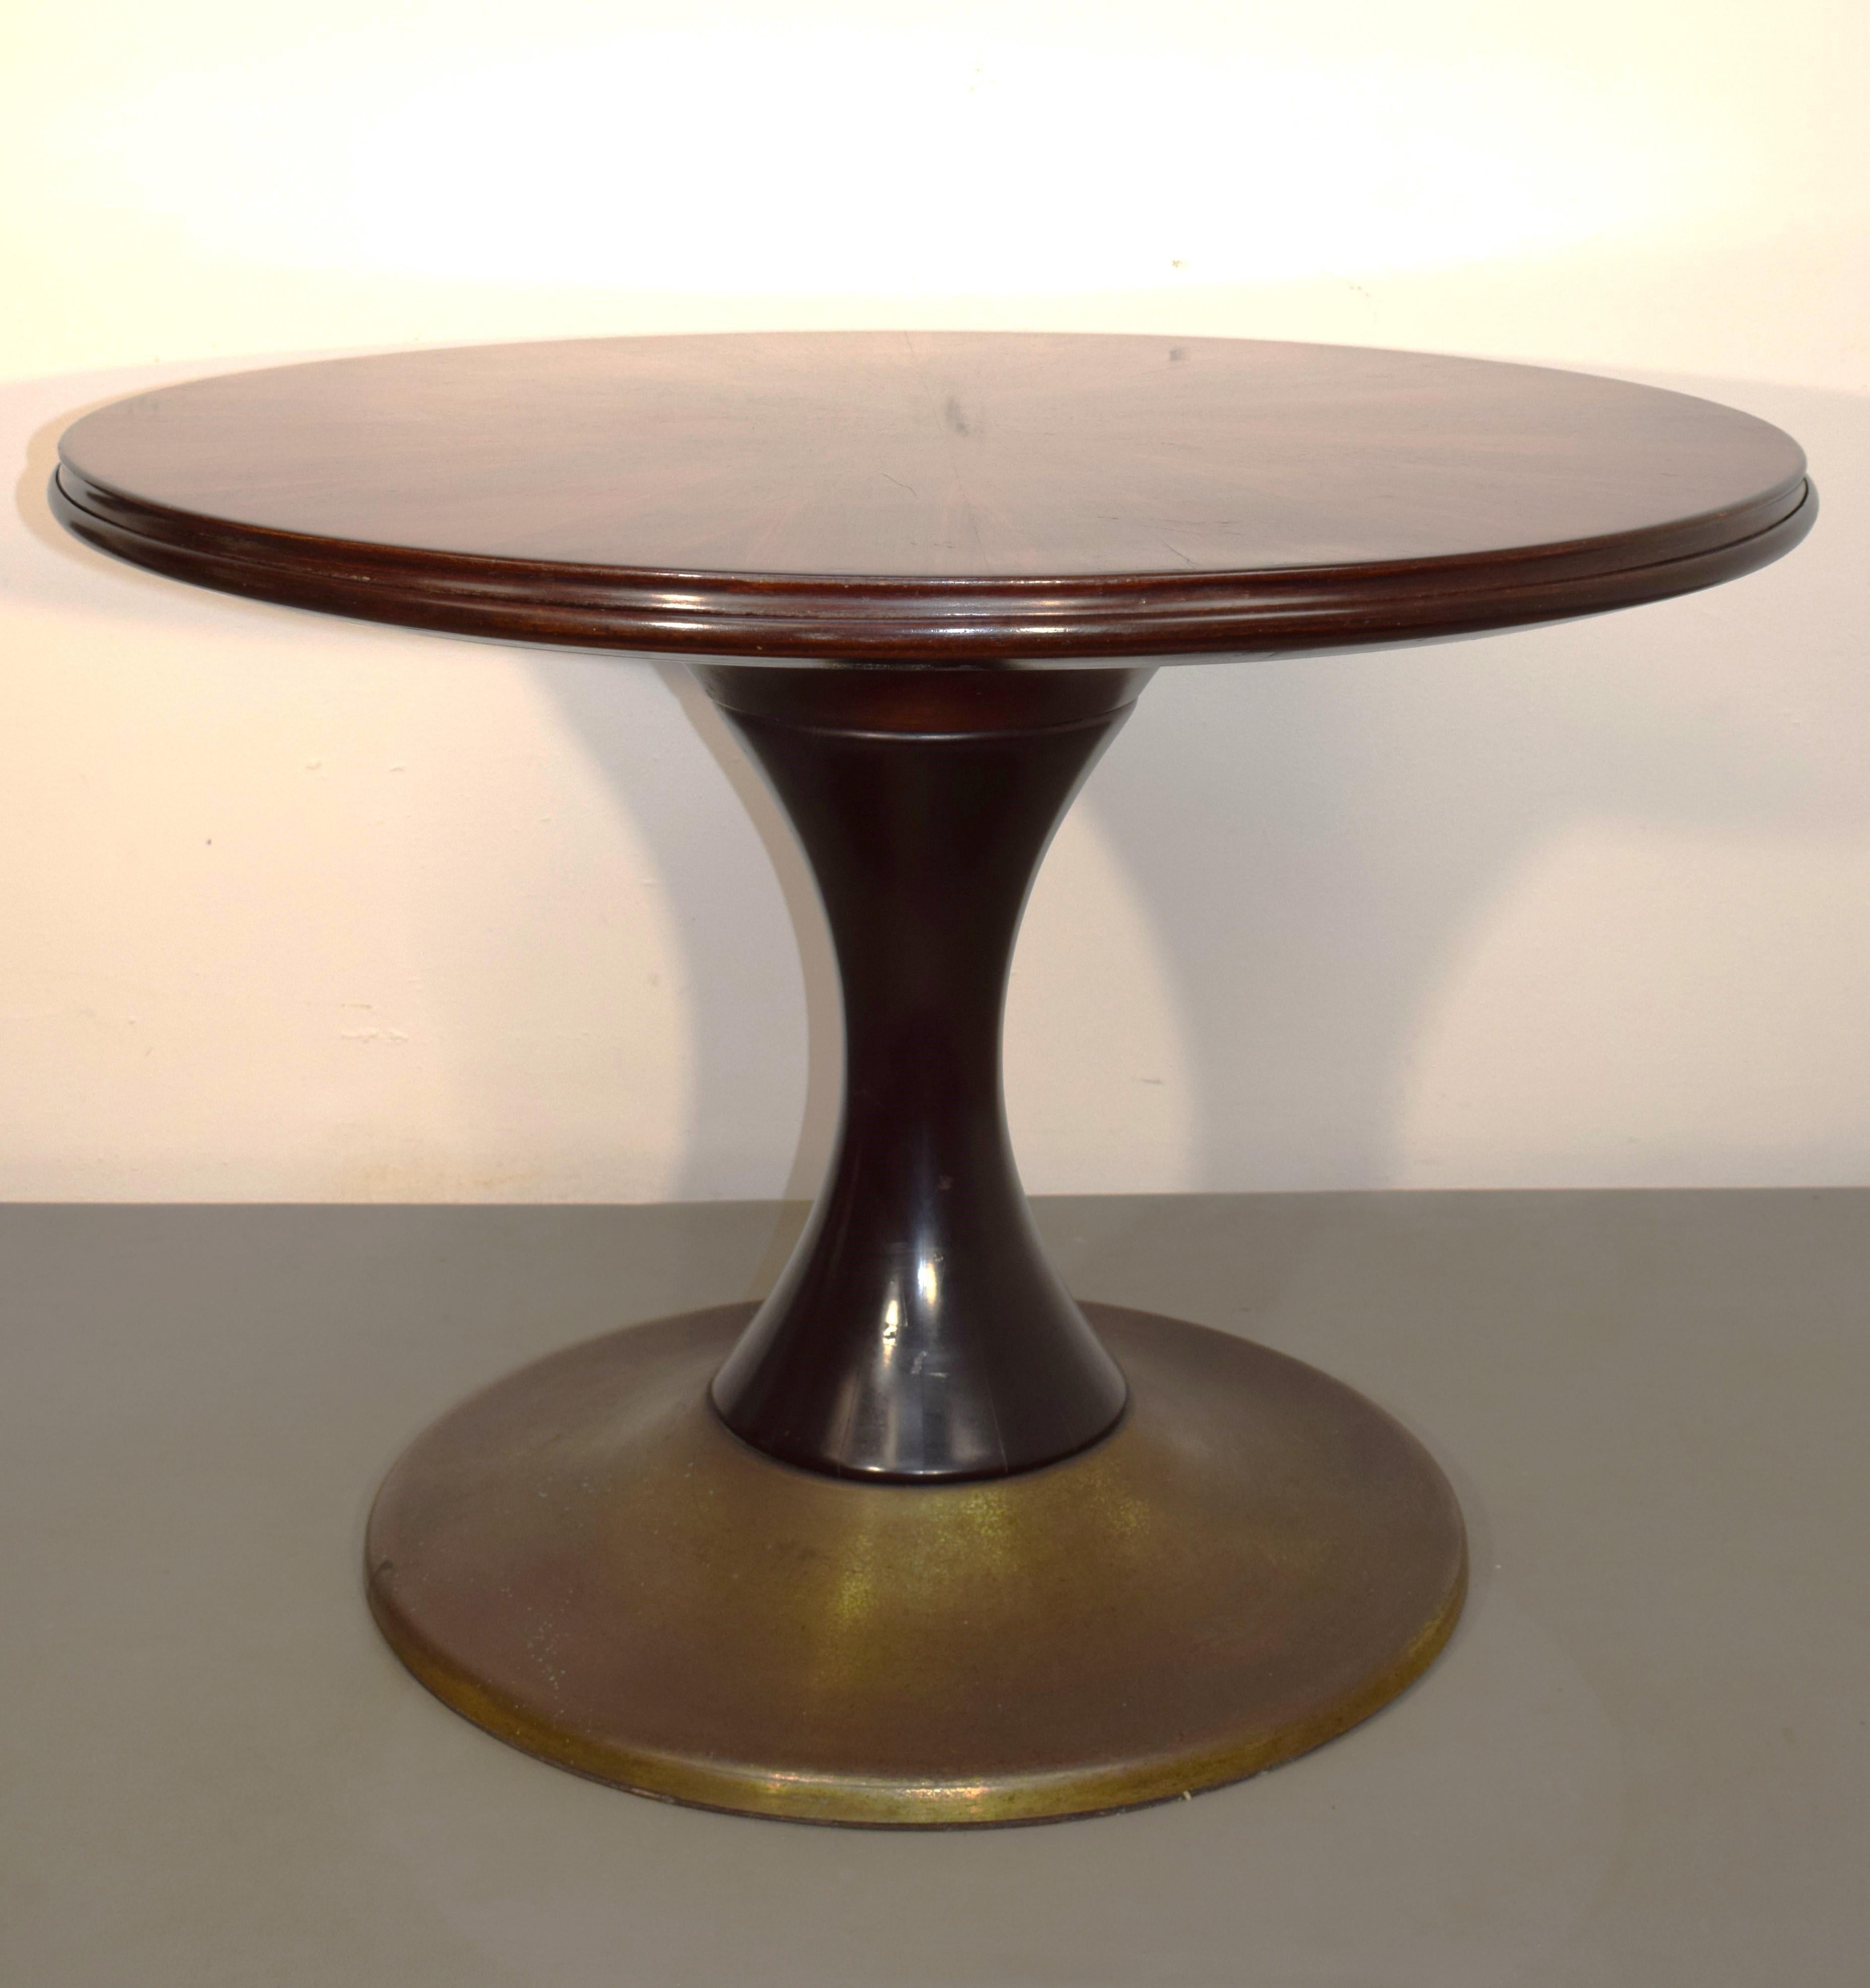 Italienischer runder Tisch, Wendetisch, 1960er Jahre.

Abmessungen: H= 70 cm; T= 101 cm.